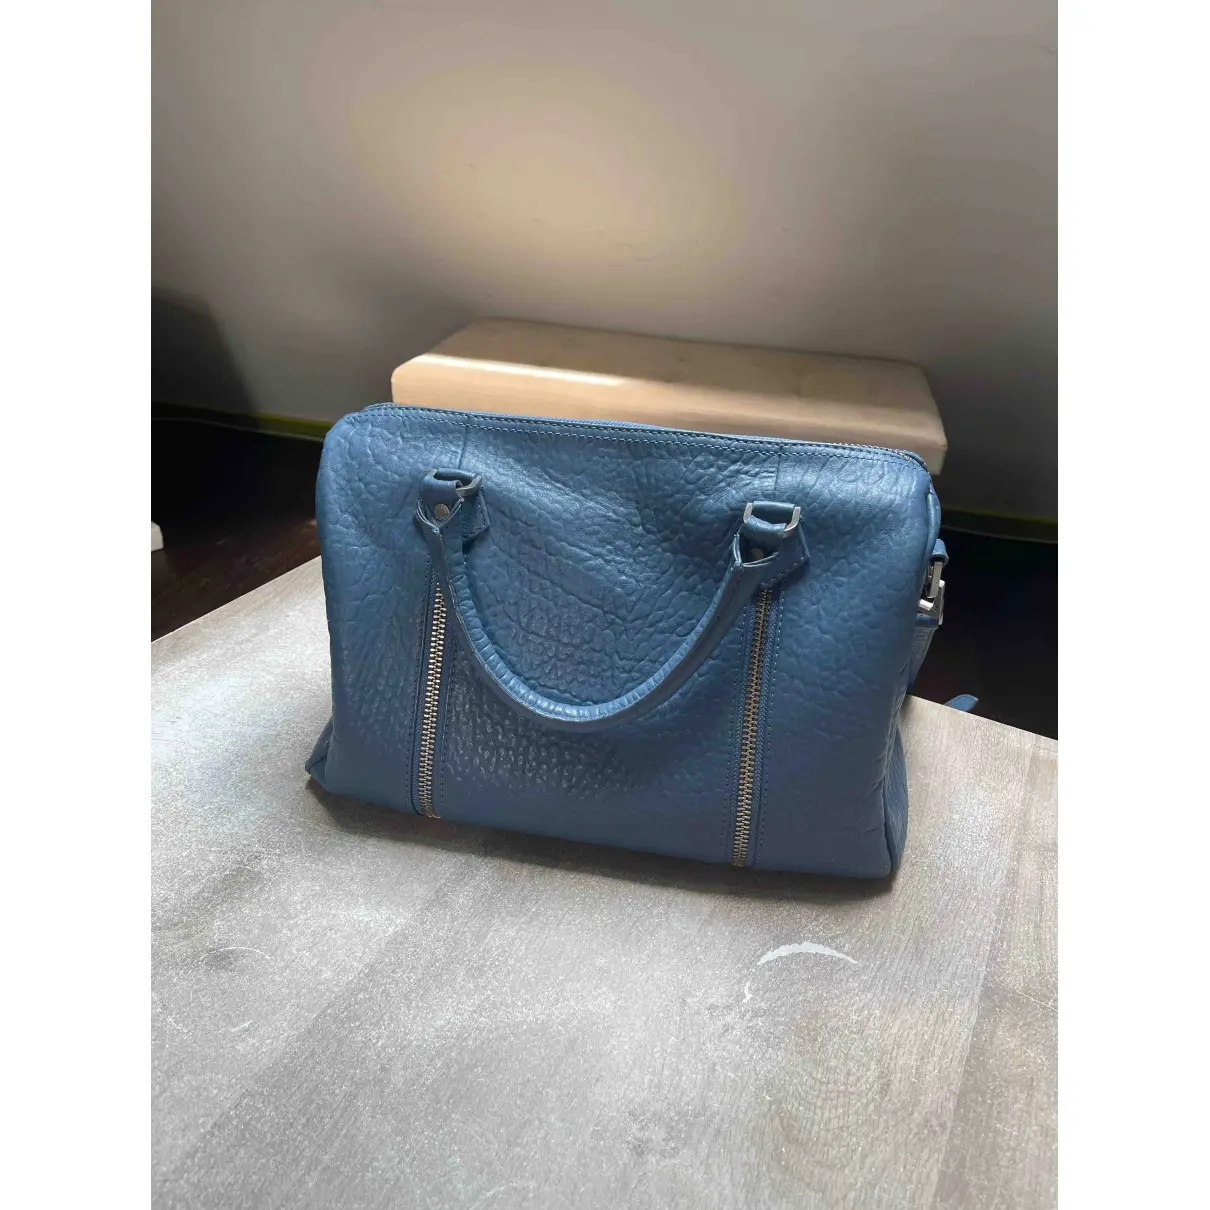 Buy Zadig & Voltaire Sunny leather handbag online